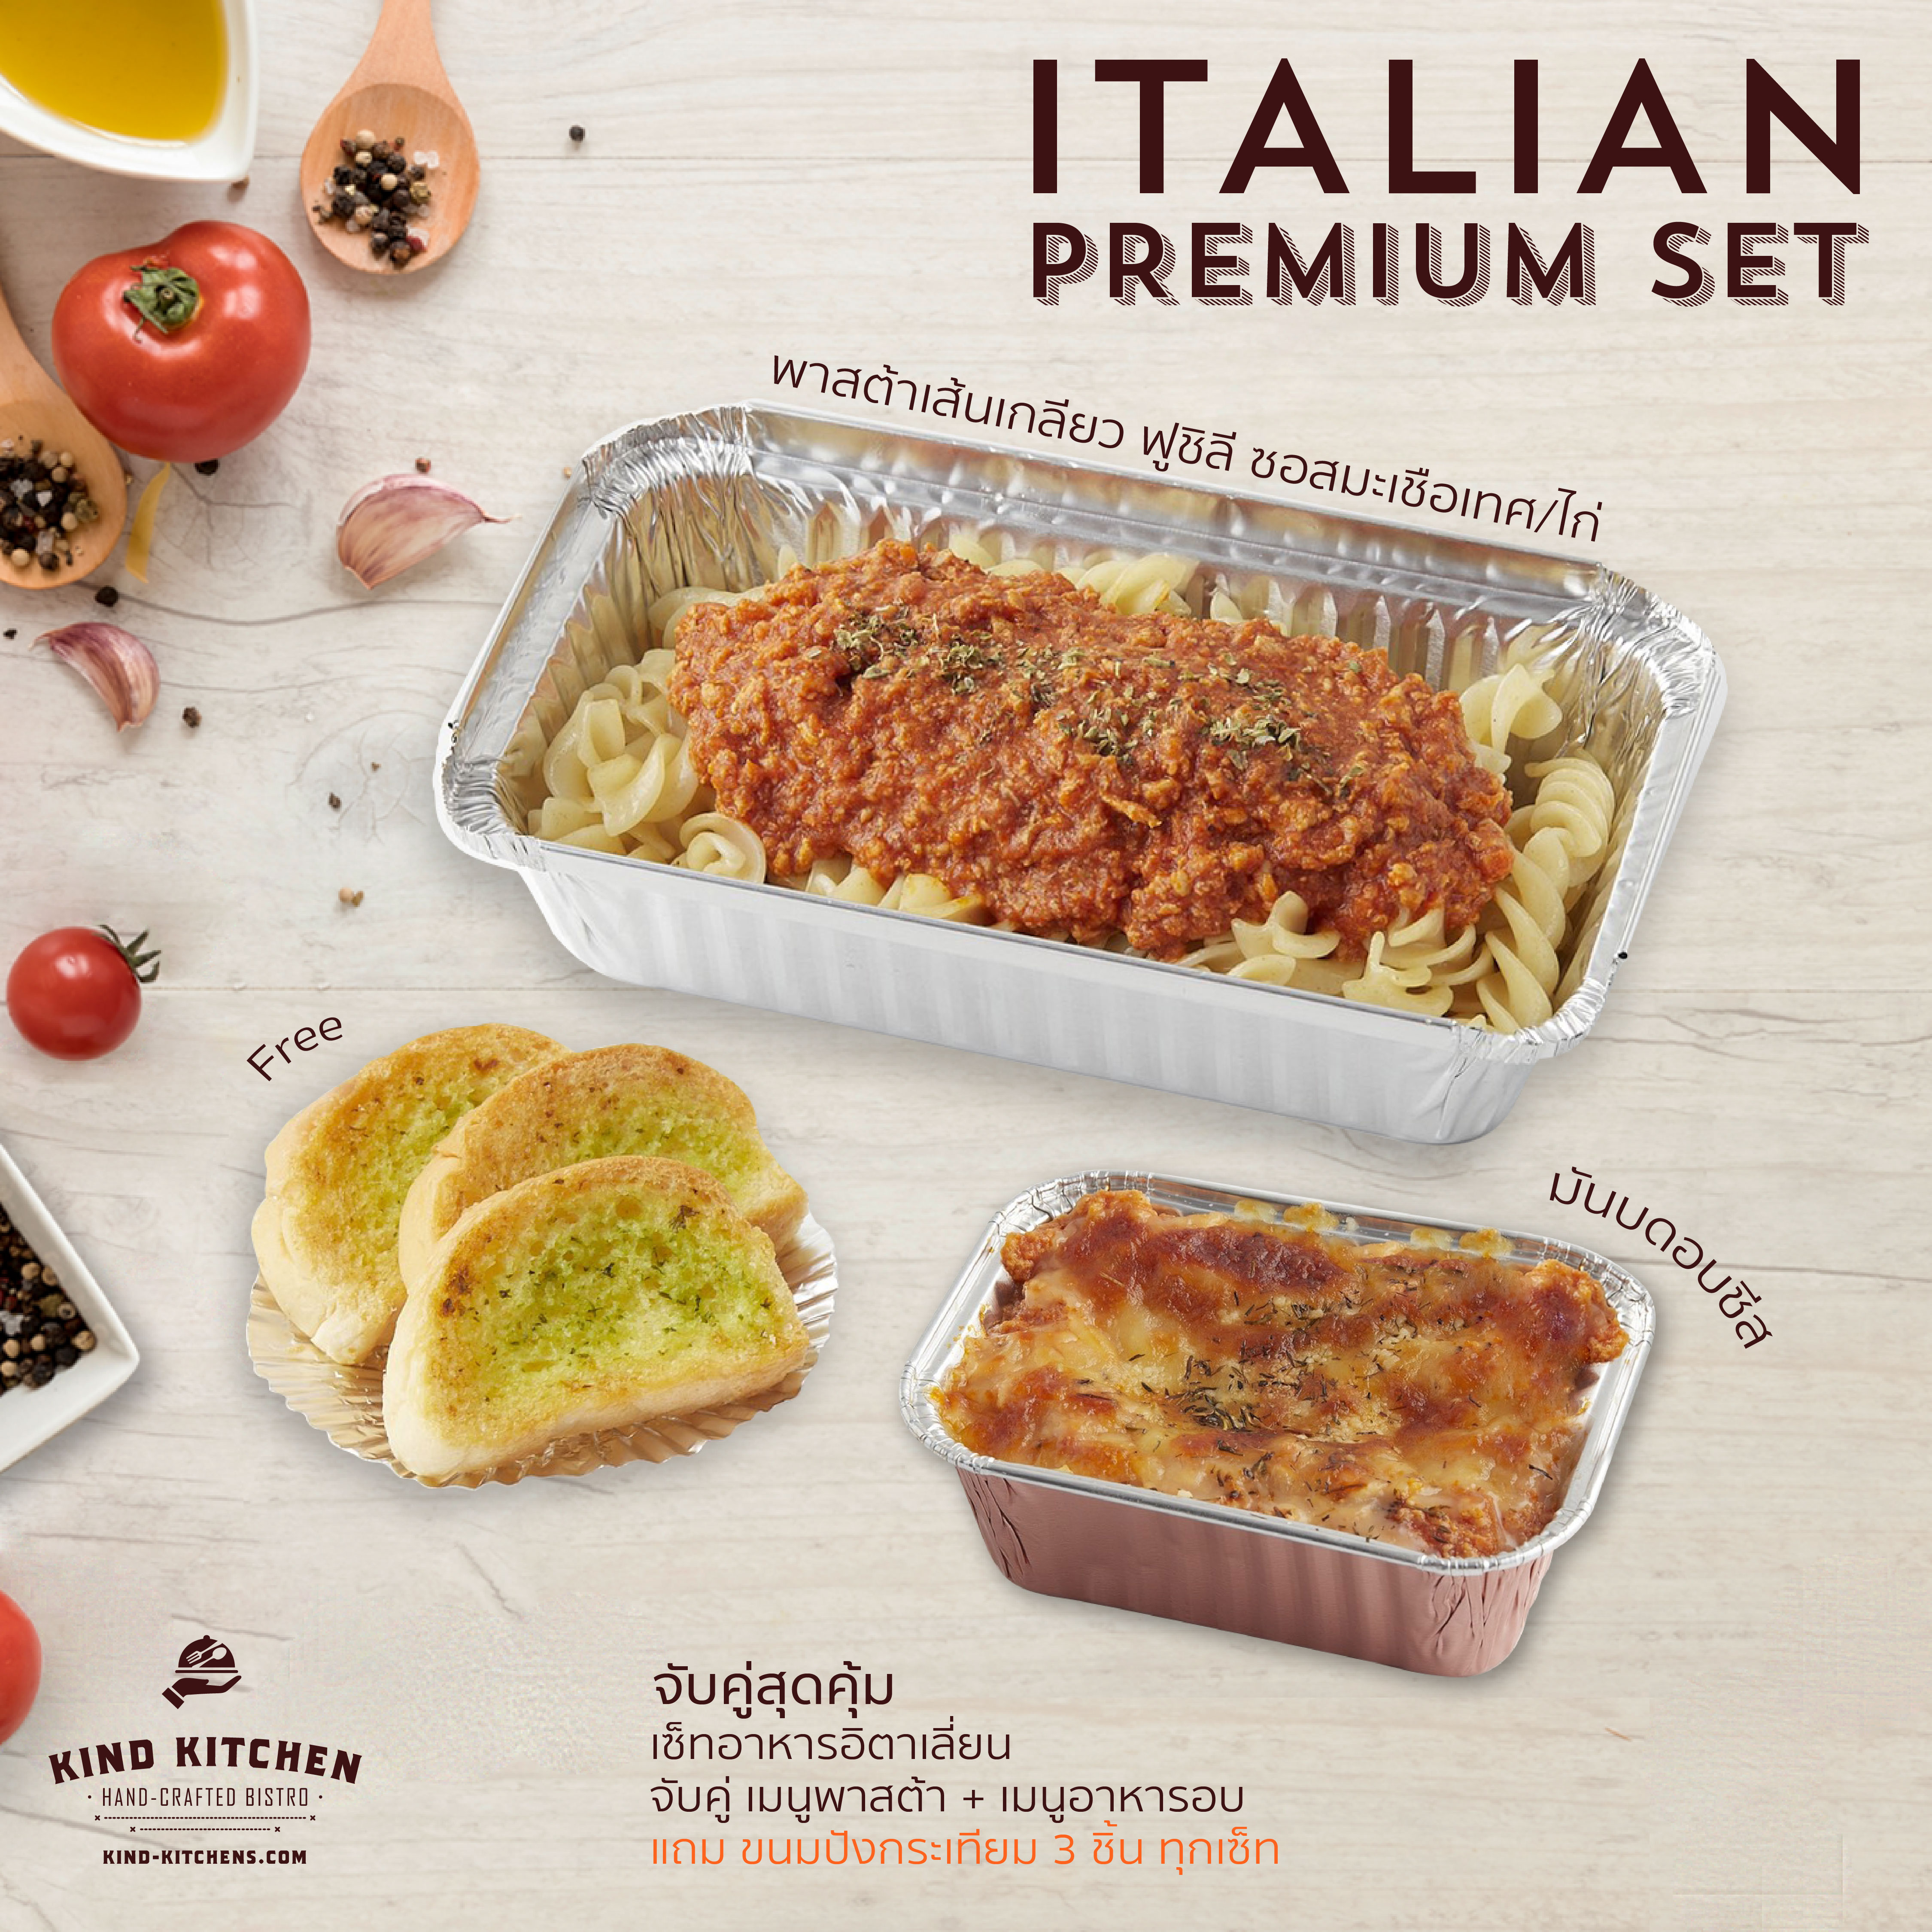 เซ็ทอาหารอิตาเลี่ยน Italian Premium Set_พาสต้าเส้นเกลียว ฟูชิลี ซอสมะเขือเทศ/ไก่ + มันบดอบชีส